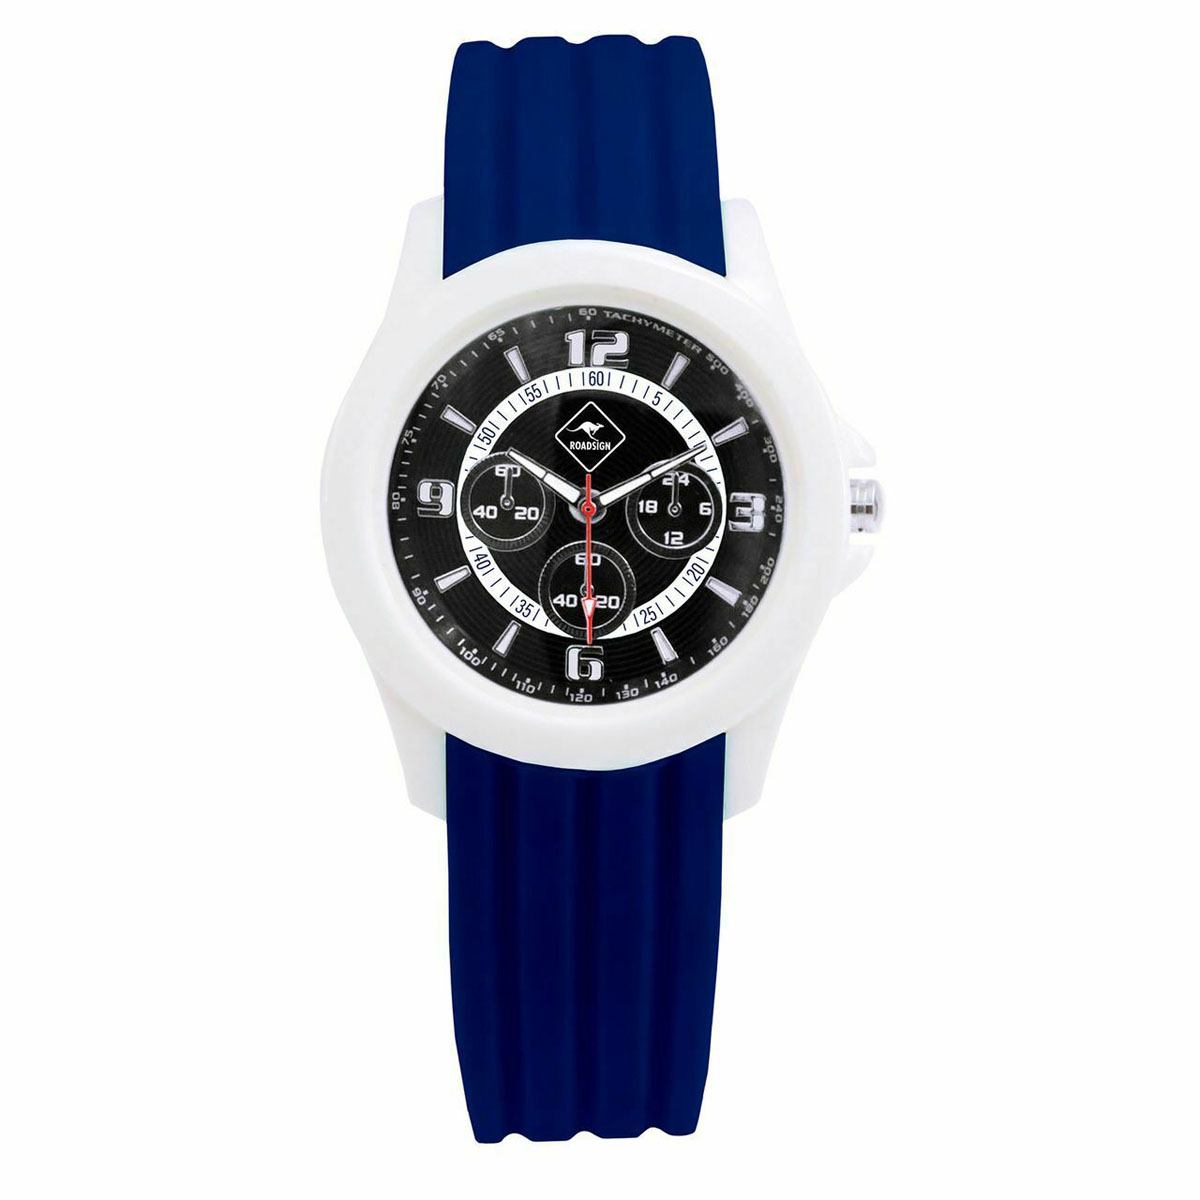 E-shop Dámské náramkové hodinky Roadsign Bunbury R14021, modré